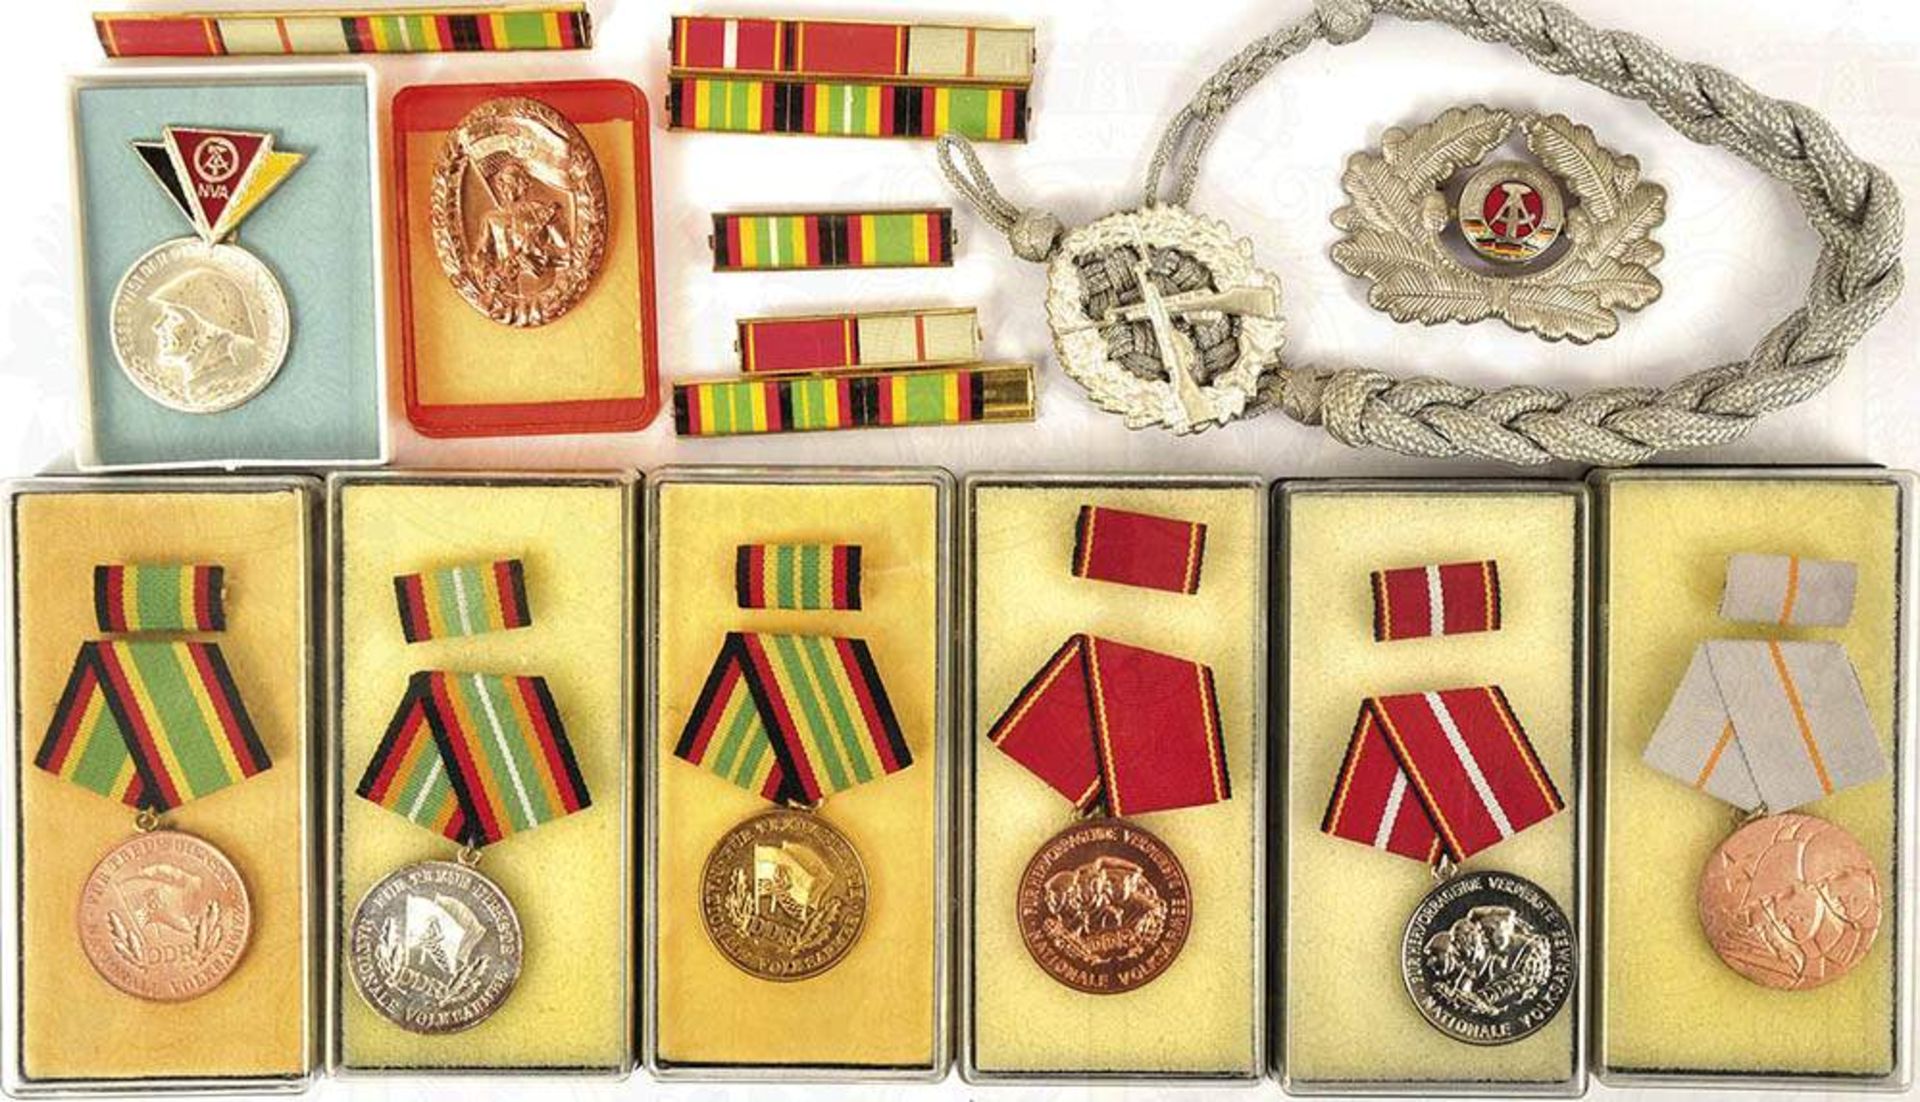 EHRENZEICHENGRUPPE NVA: Verdienstmed. d. NVA in Bronze u. Silber; Medaille der Waffenbrüderschaft in